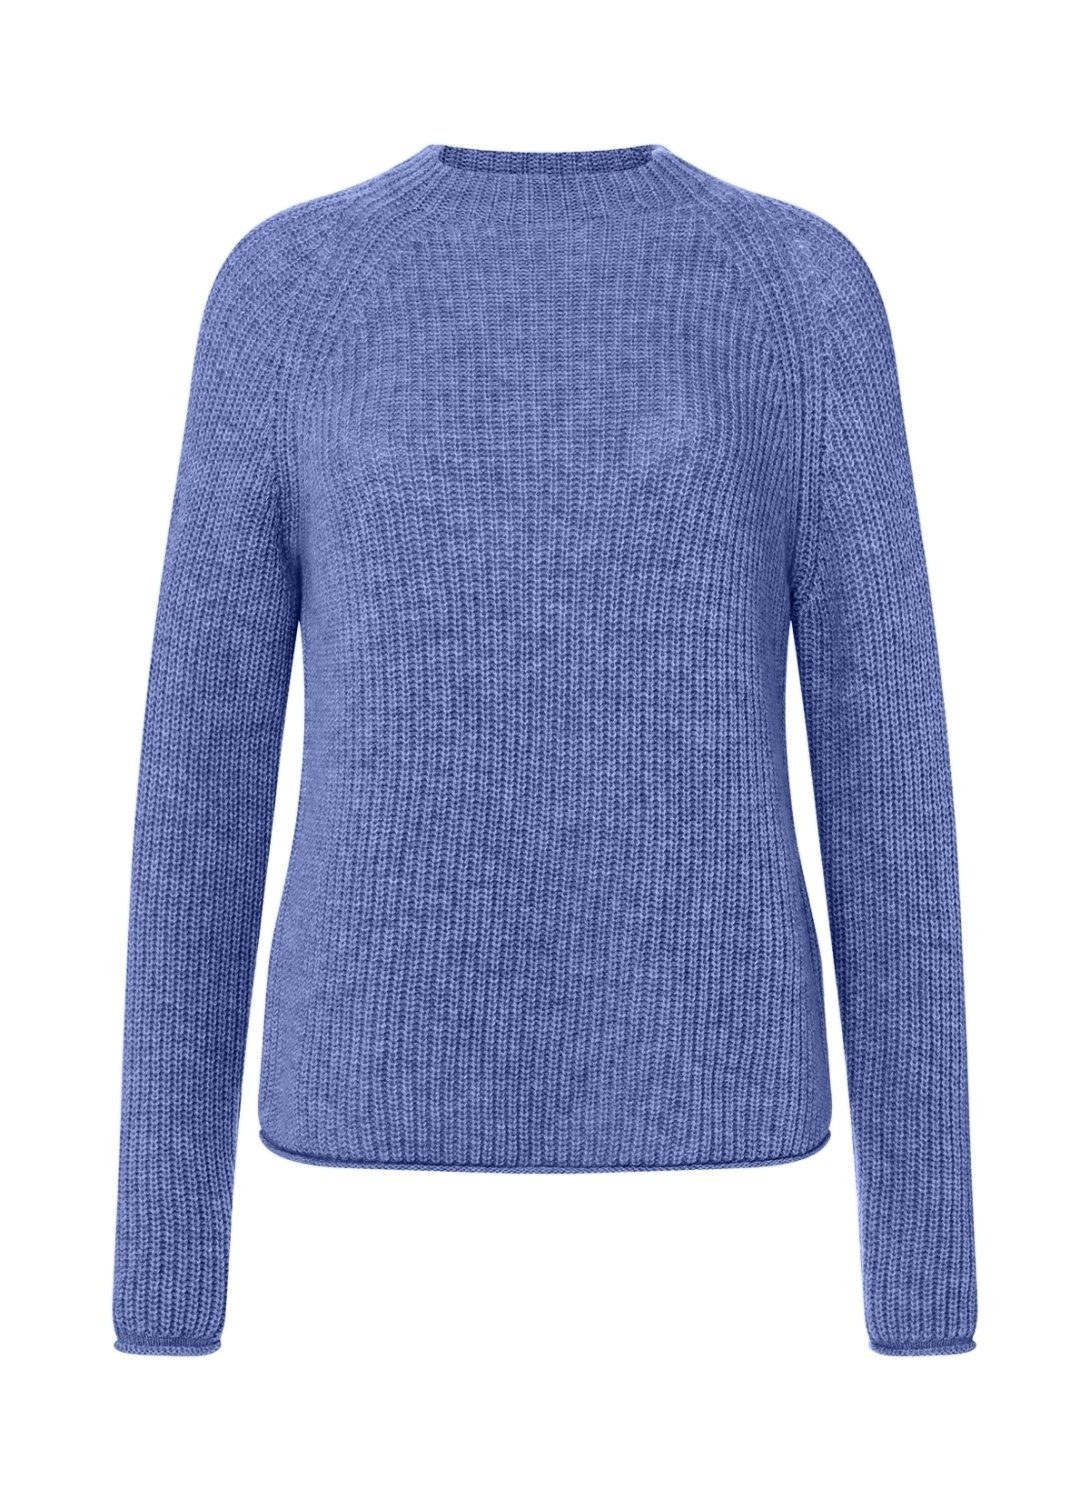 März Pullover online kaufen | OTTO